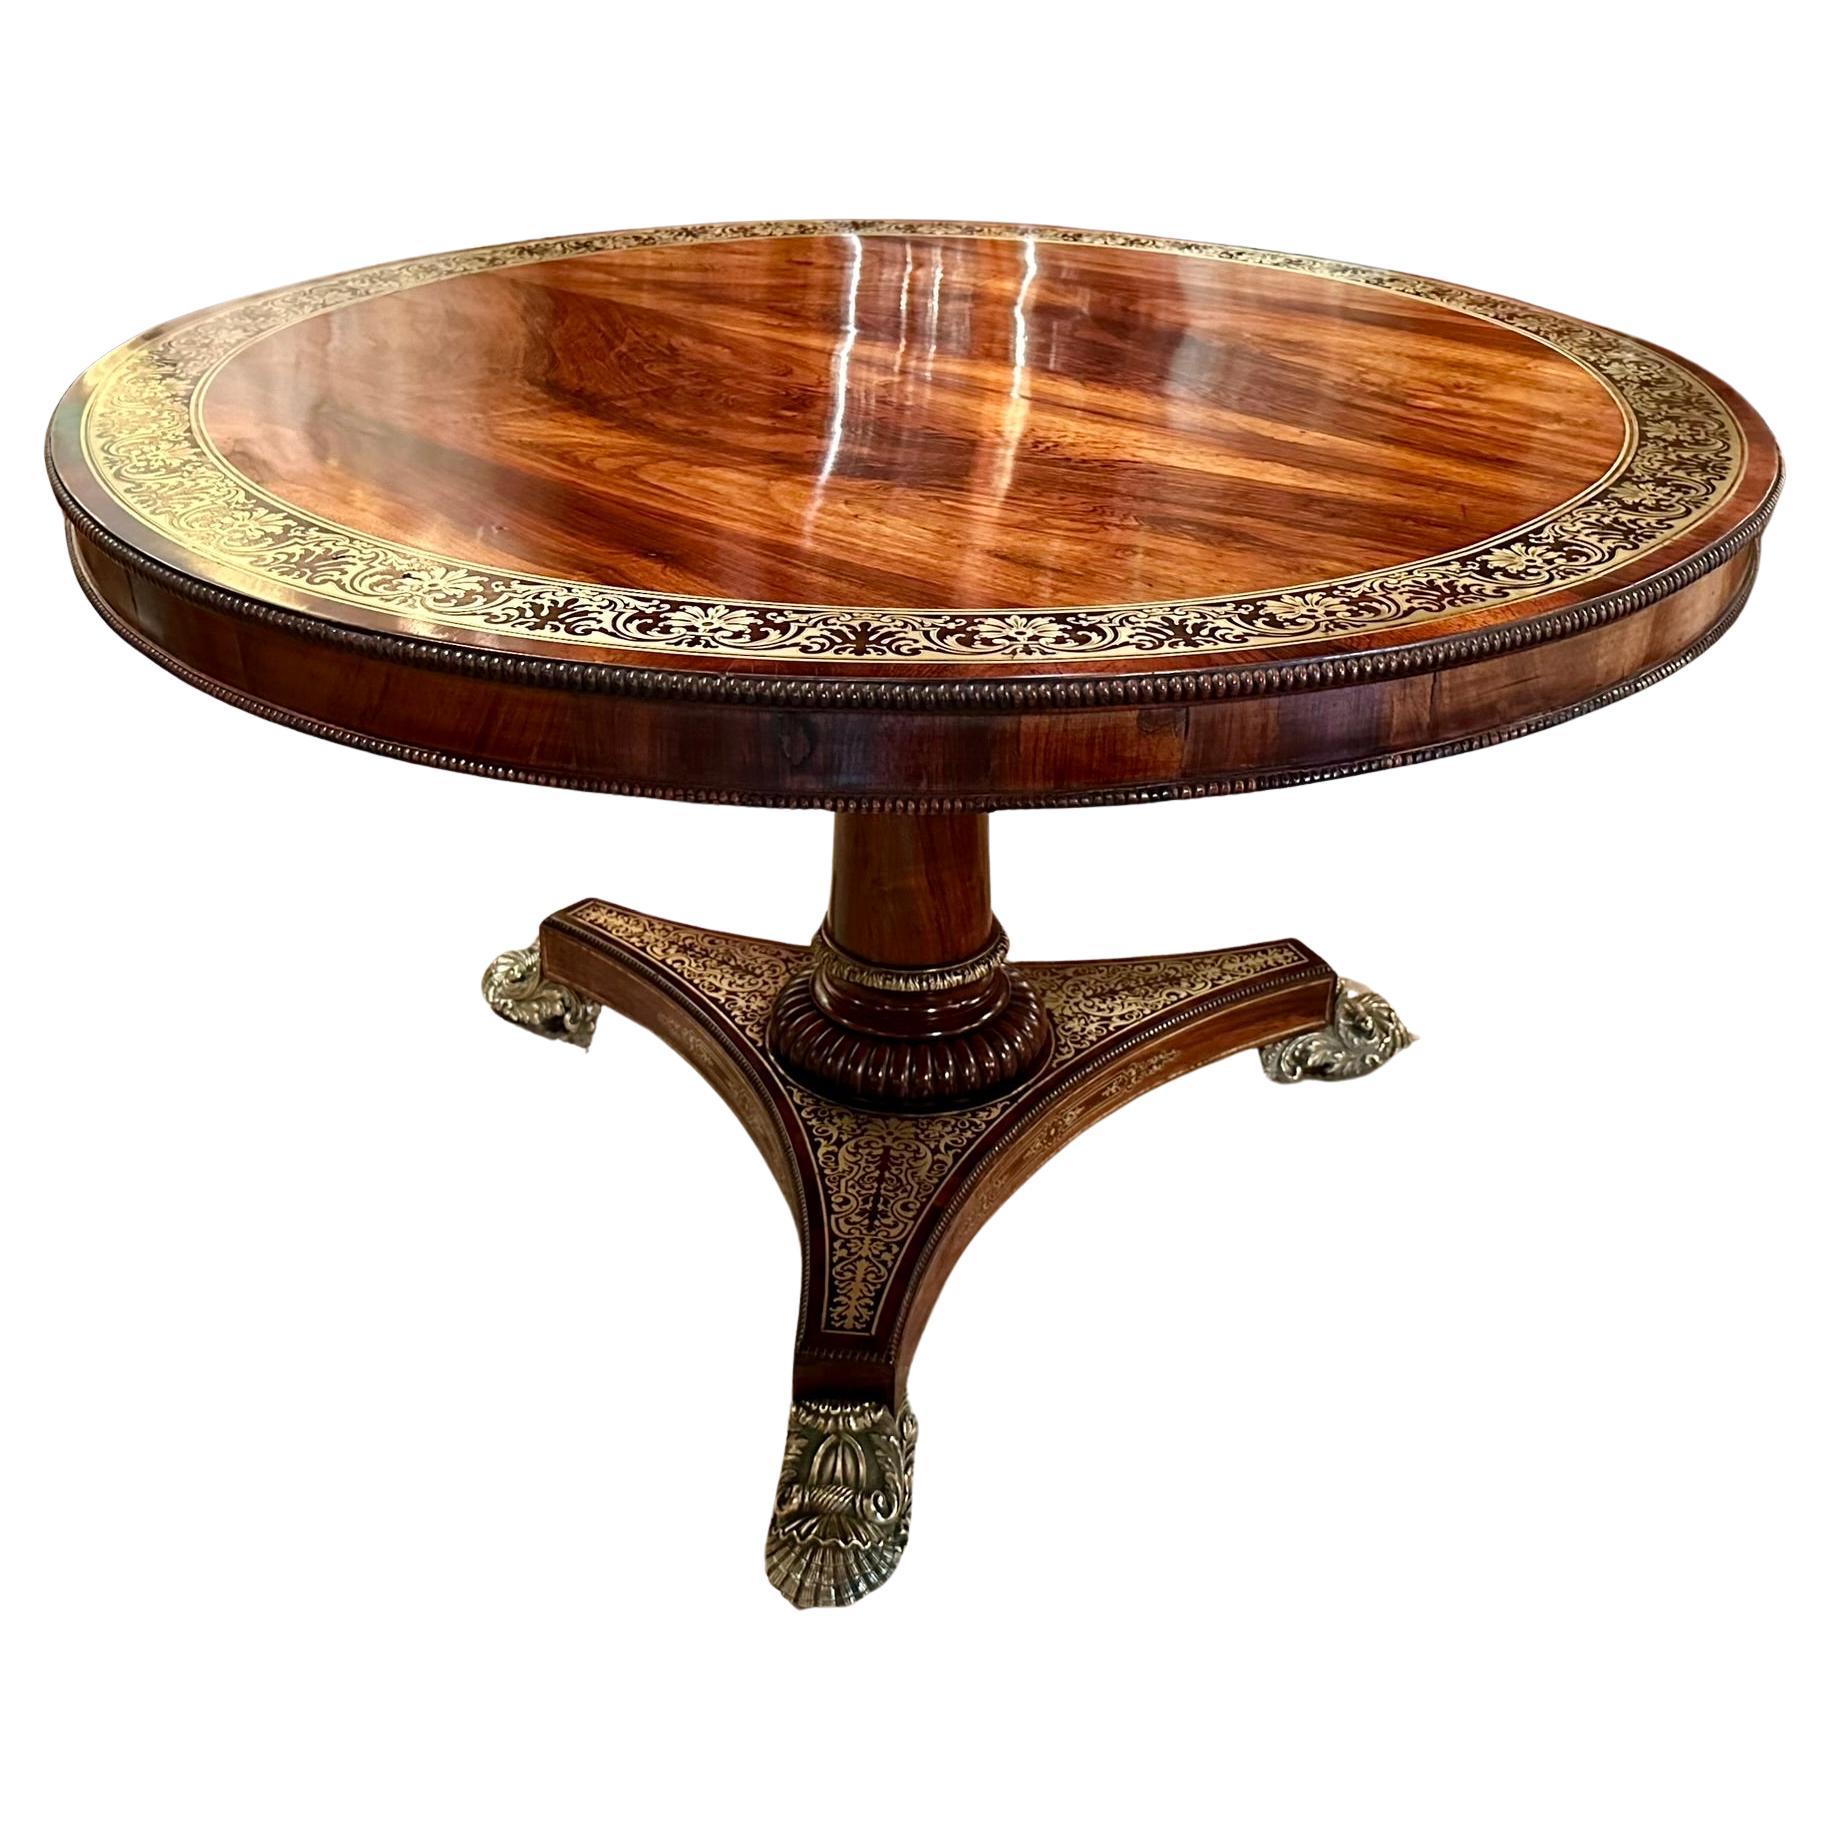 Ancienne table centrale de style Régence anglaise en bois de rose avec incrustation de laiton, vers 1830